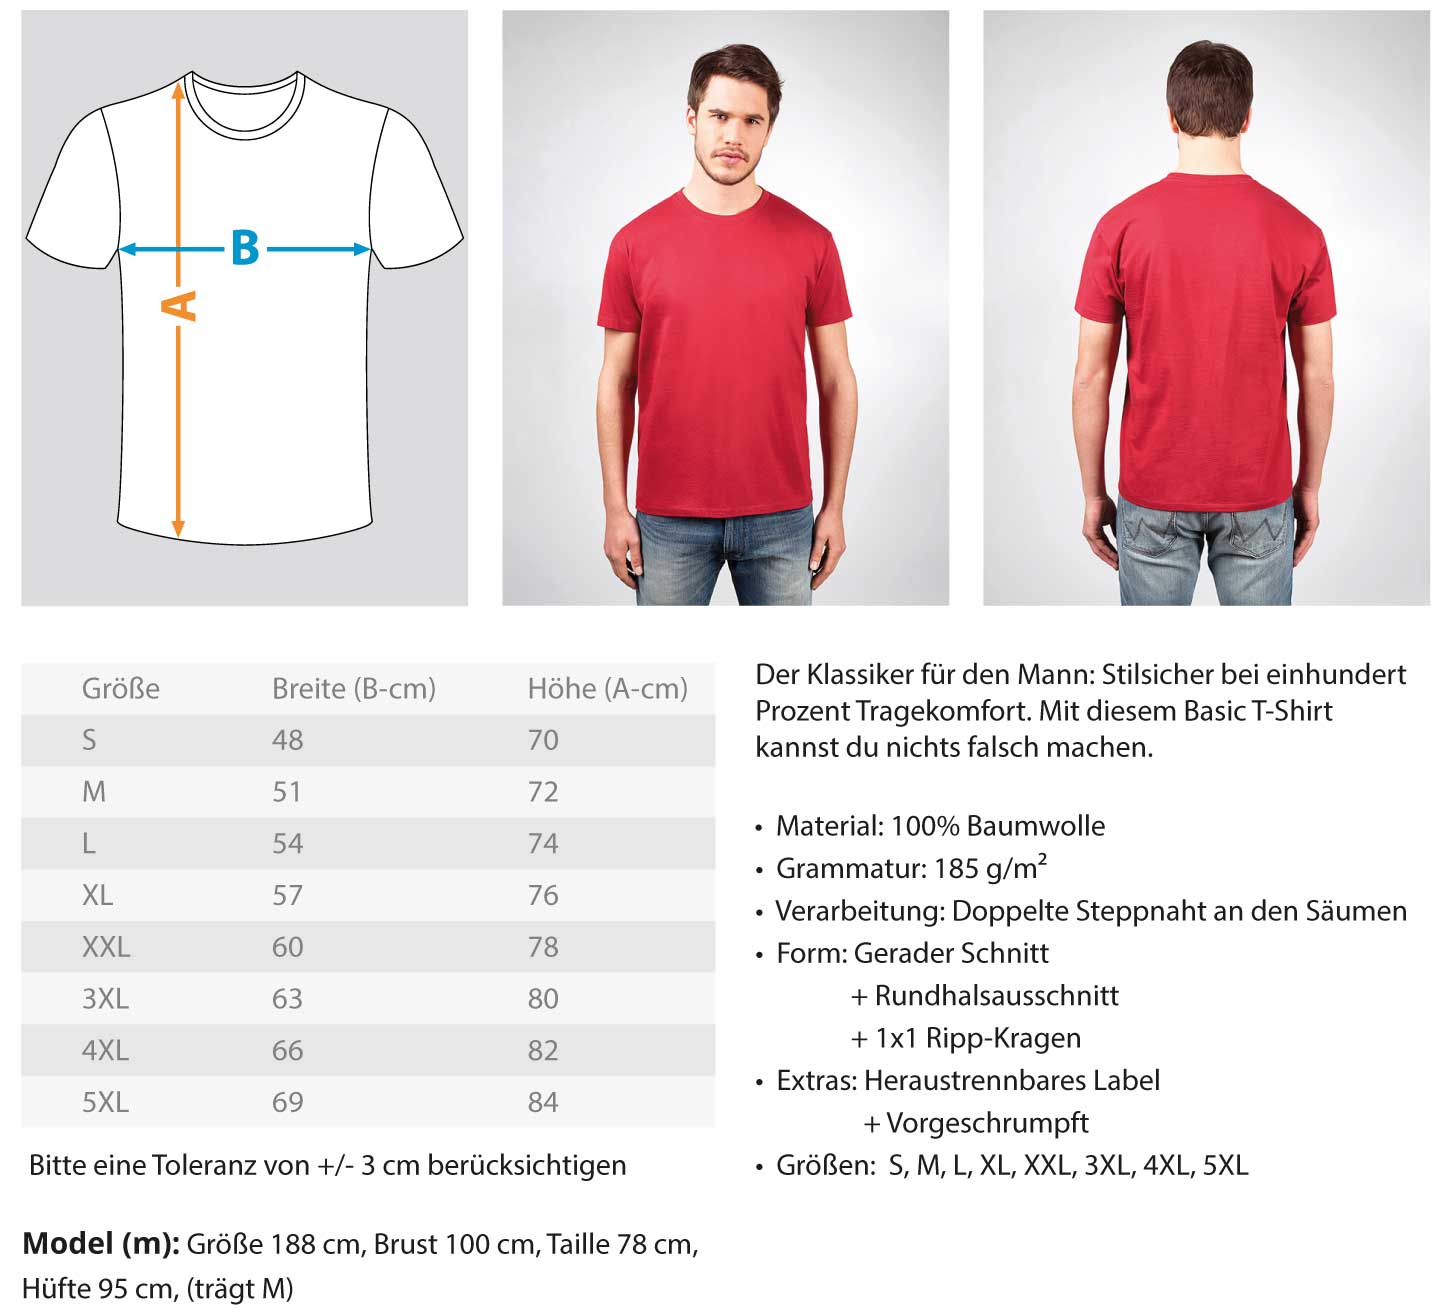 H+P Gerüstbau  - Herren Shirt €24.95 Gerüstbauer - Shop >>